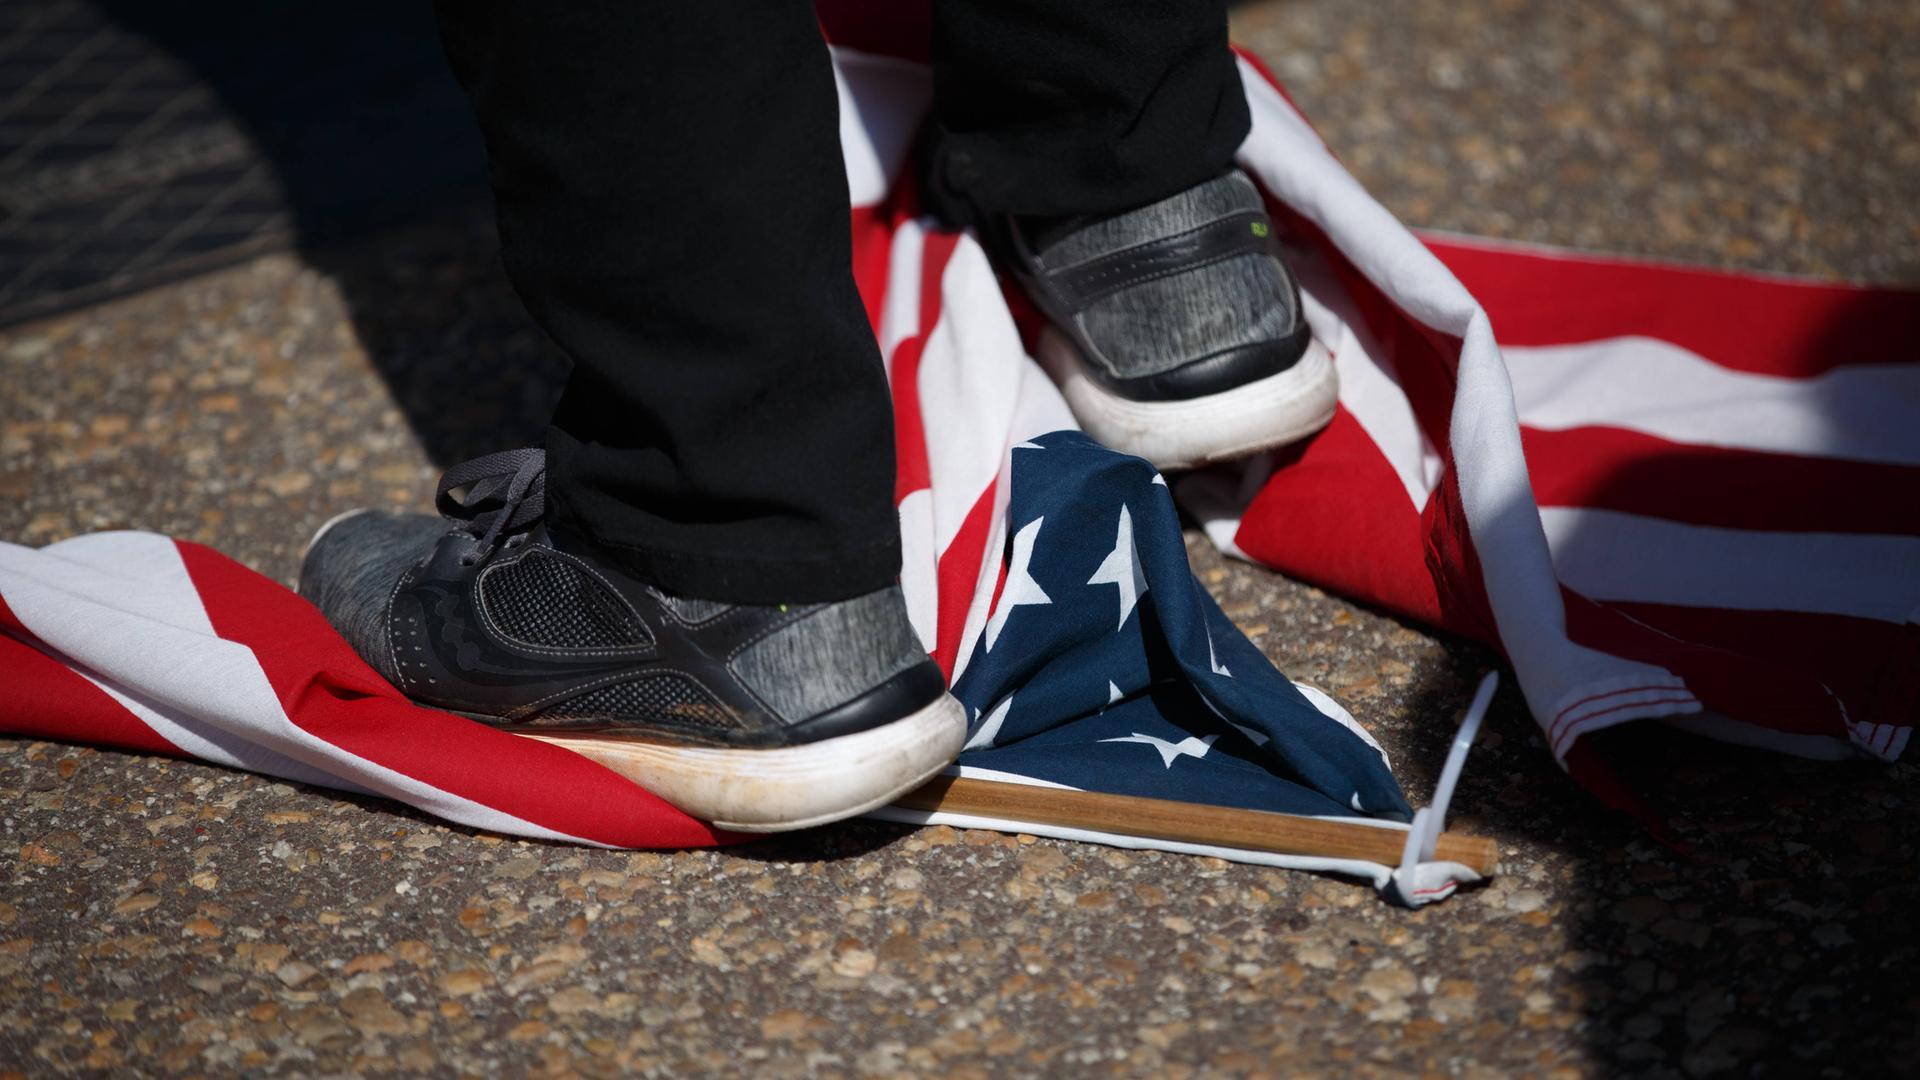 Großaufnahme eines Fußes, der auf einer am Boden liegenden us-amerikanischen Flagge steht.